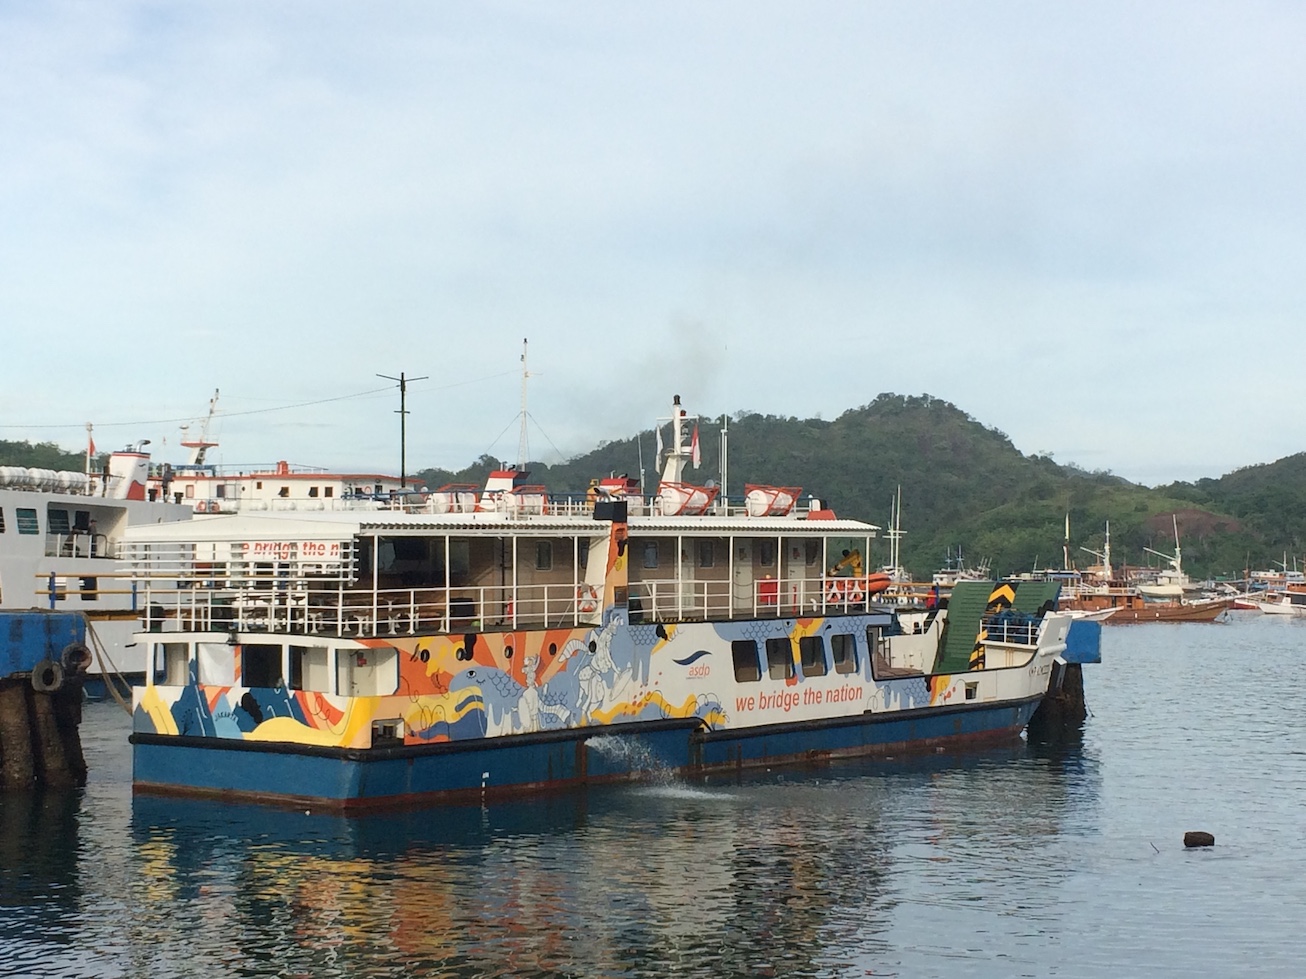 KMP Komodo, ferry penyeberangan ke pulau komodo, jalan jalan ke labuan bajo, trip harian ke komodo, sewa kapal di labuan bajo, tips hemat ke pulau komodo.